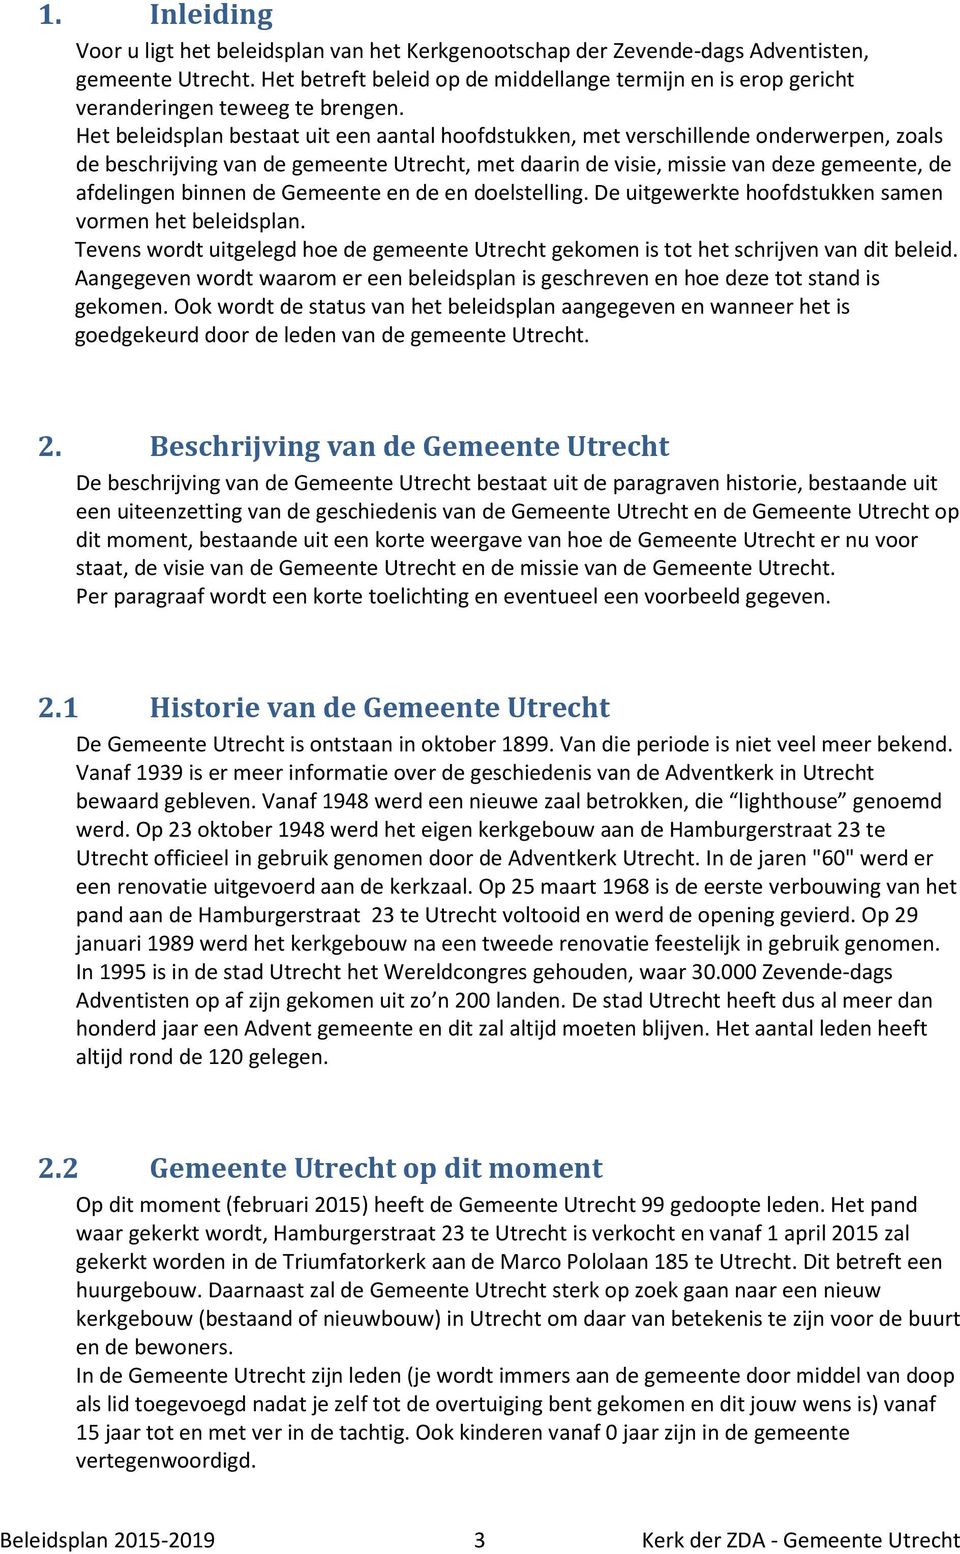 Het beleidsplan bestaat uit een aantal hoofdstukken, met verschillende onderwerpen, zoals de beschrijving van de gemeente Utrecht, met daarin de visie, missie van deze gemeente, de afdelingen binnen